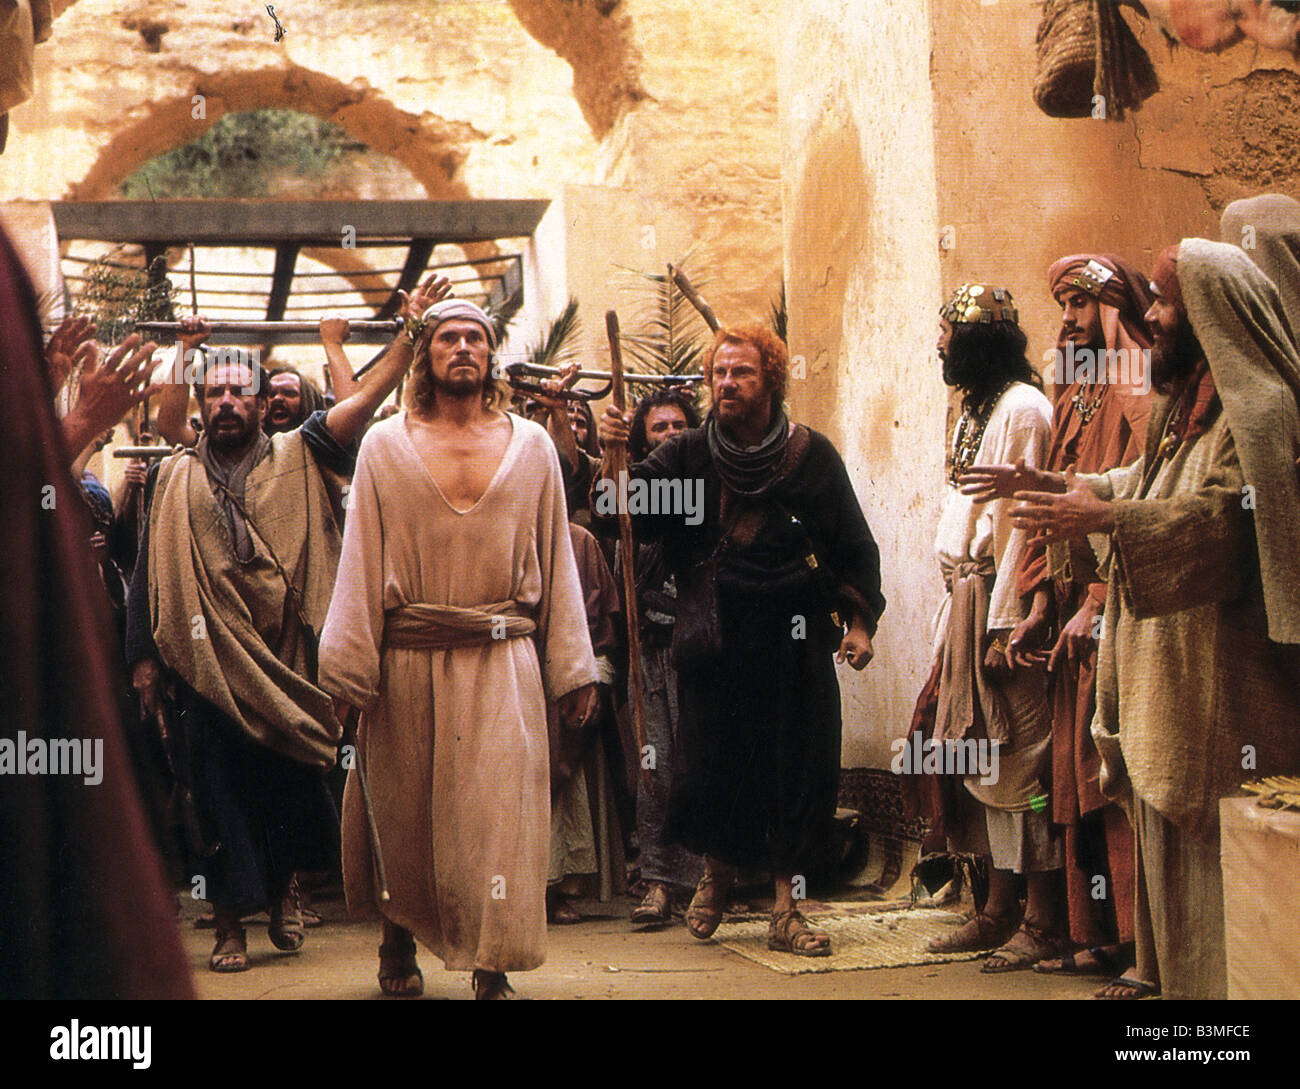 L'ultima tentazione di Cristo 1988 film universale con Willem Dafoe come Gesù Foto Stock